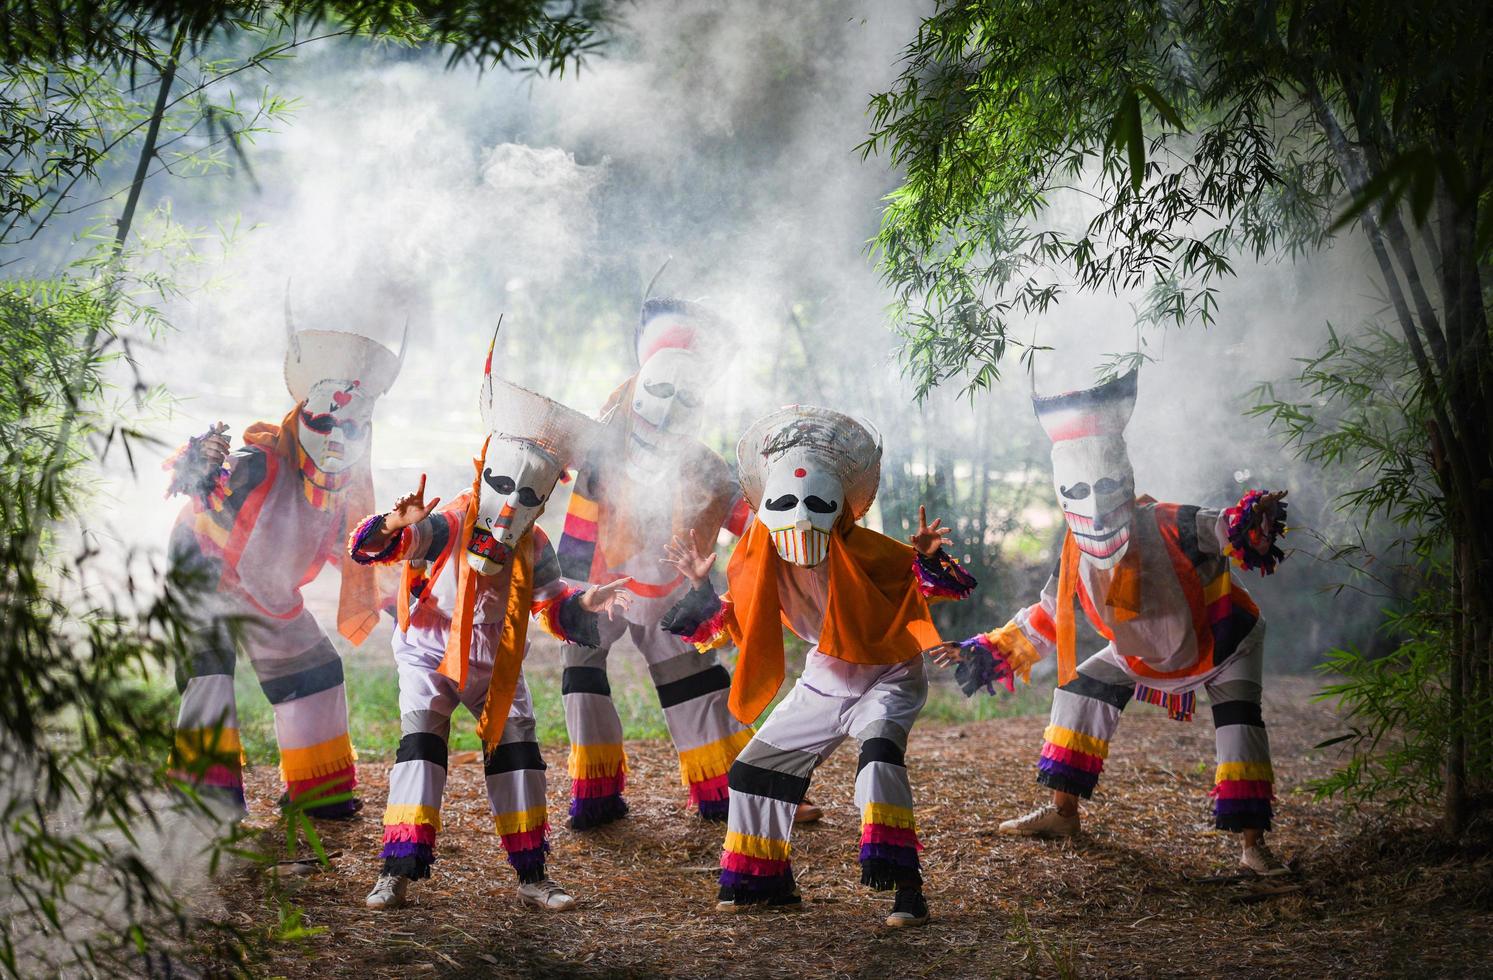 festival phi ta khon masque fantôme et costume coloré amusant masque traditionnel thaïlandais le spectacle art et culture province de loei festival dan sai thailand - phi ta khon ou halloween de thaïlande photo